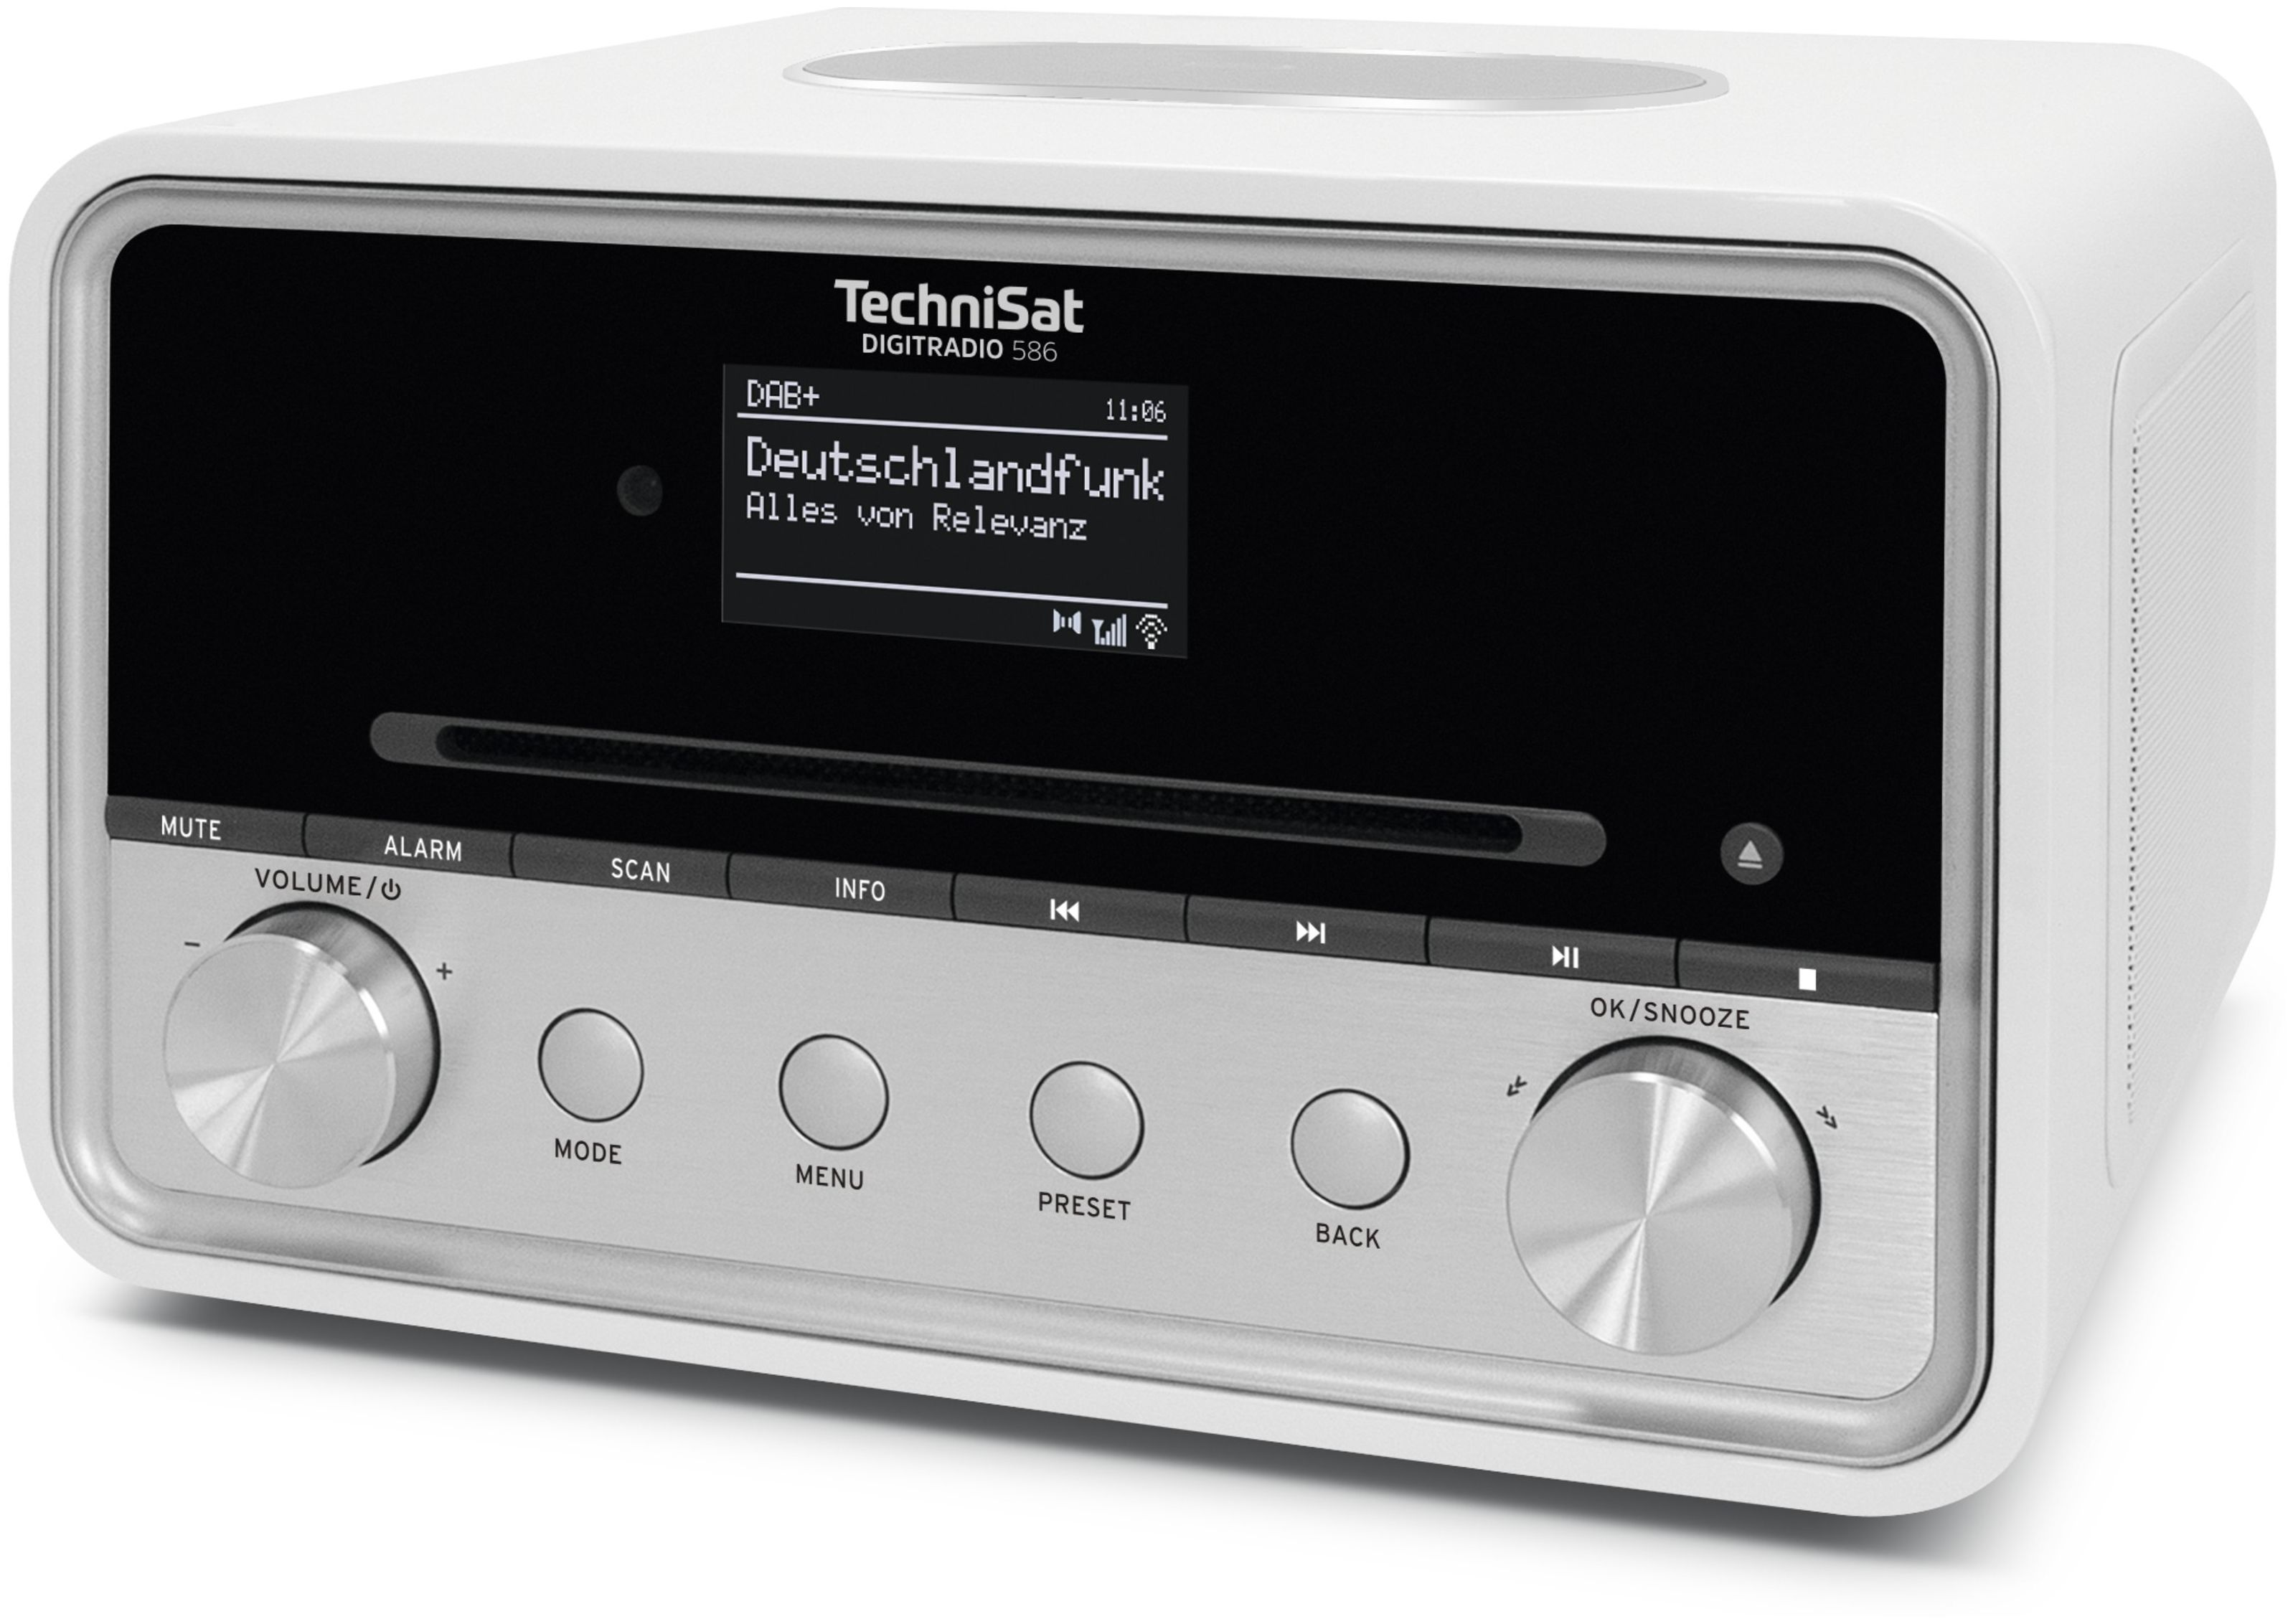 TechniSat Digitradio 586 Bluetooth DAB+, FM Persönlich Radio (Weiß) von  expert Technomarkt